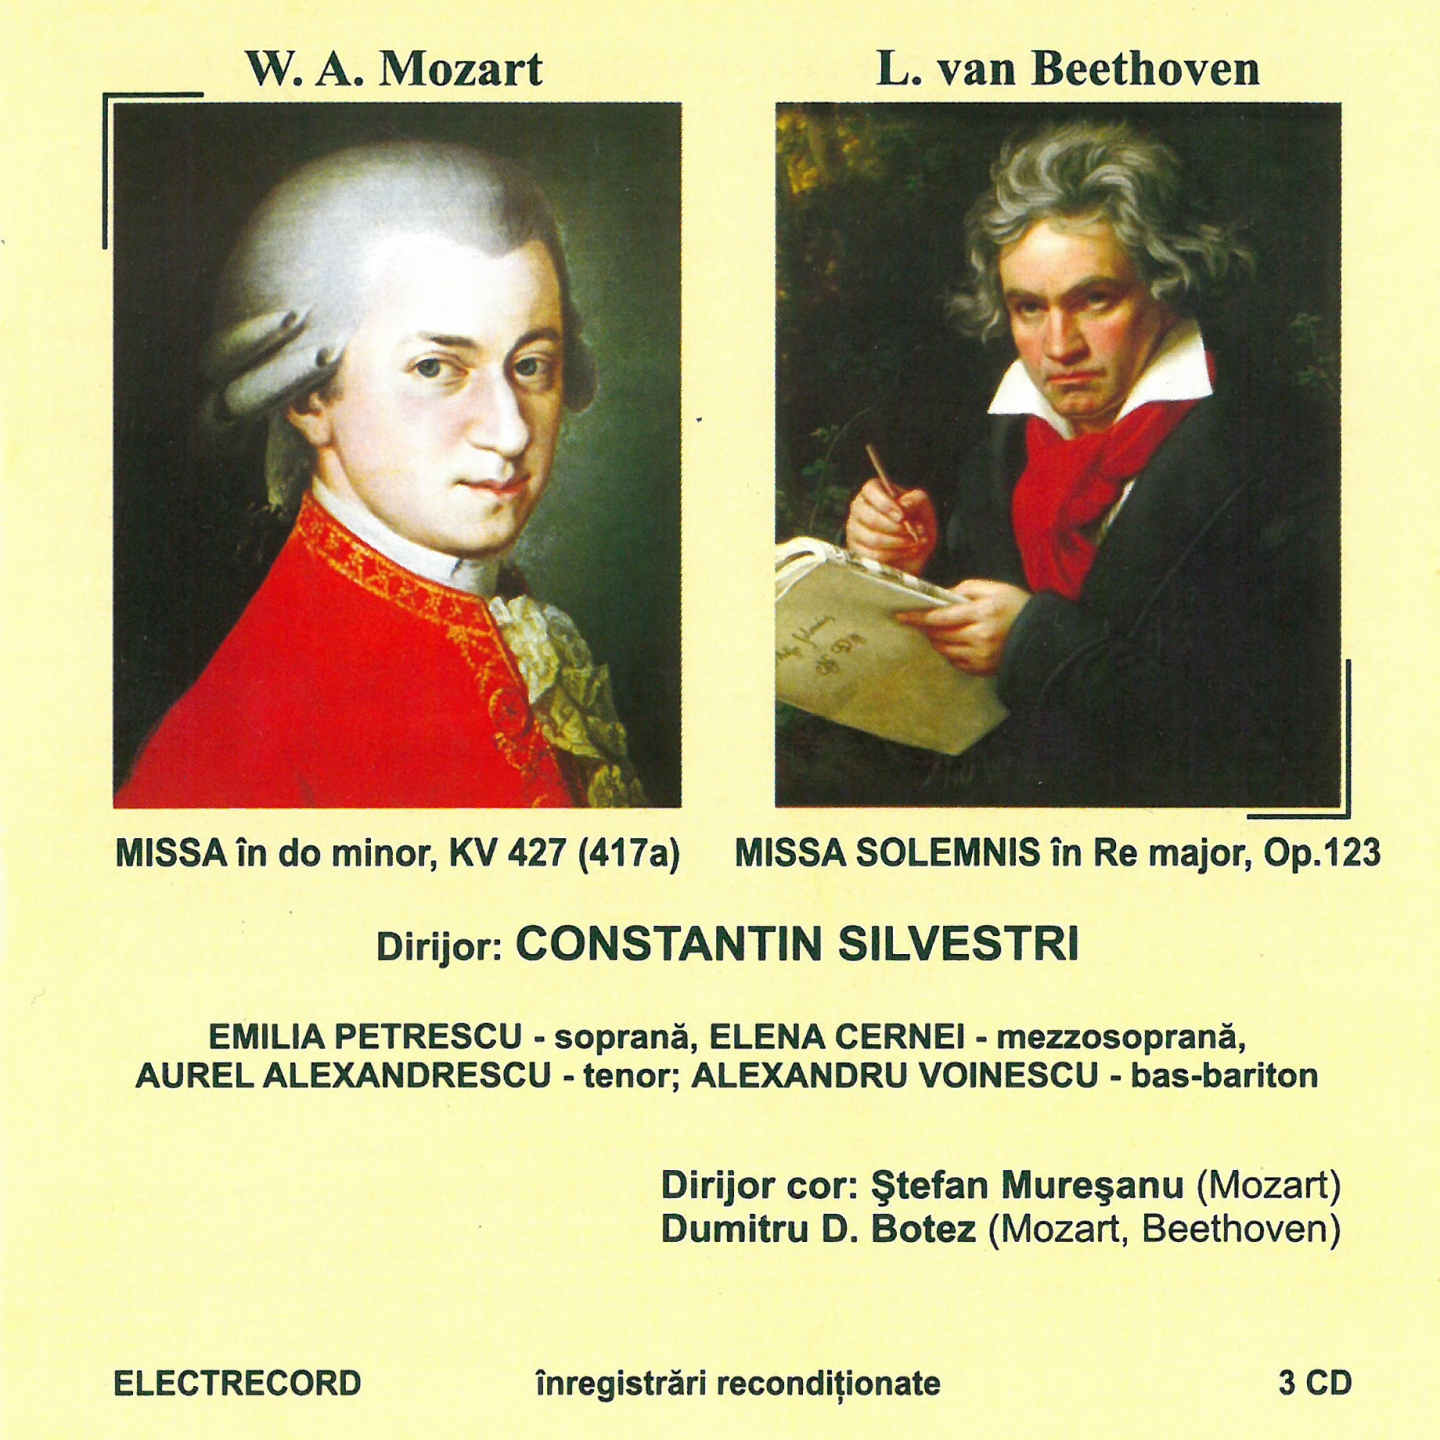 Wolfgang Amadeus Mozart: Missa n Do minor kv 427 Ludwig van Beethoven: Missa solemnis n Re major, op. 123, Vol. II